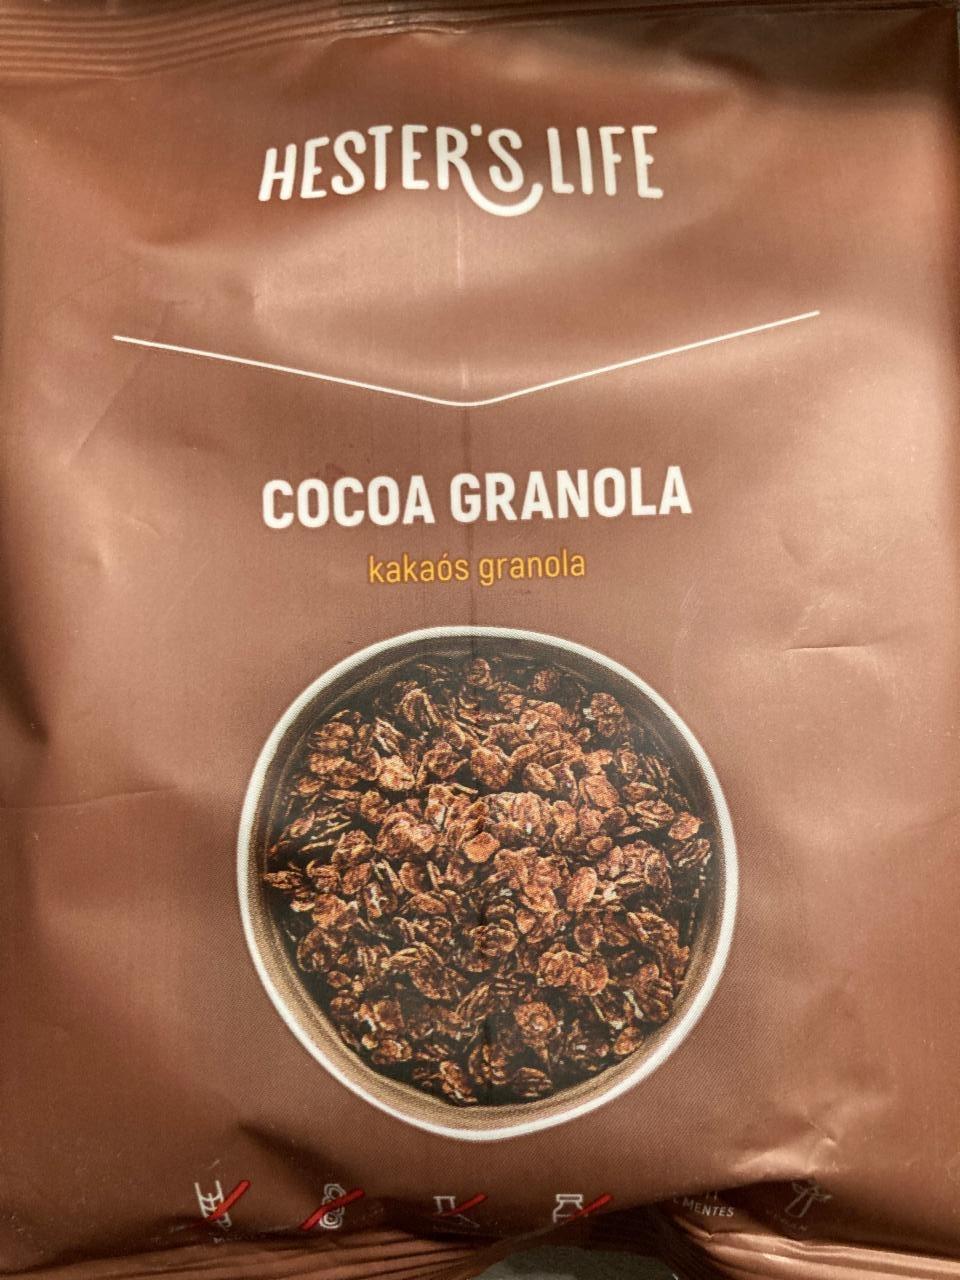 Fotografie - Cocoa granola Hester's Life